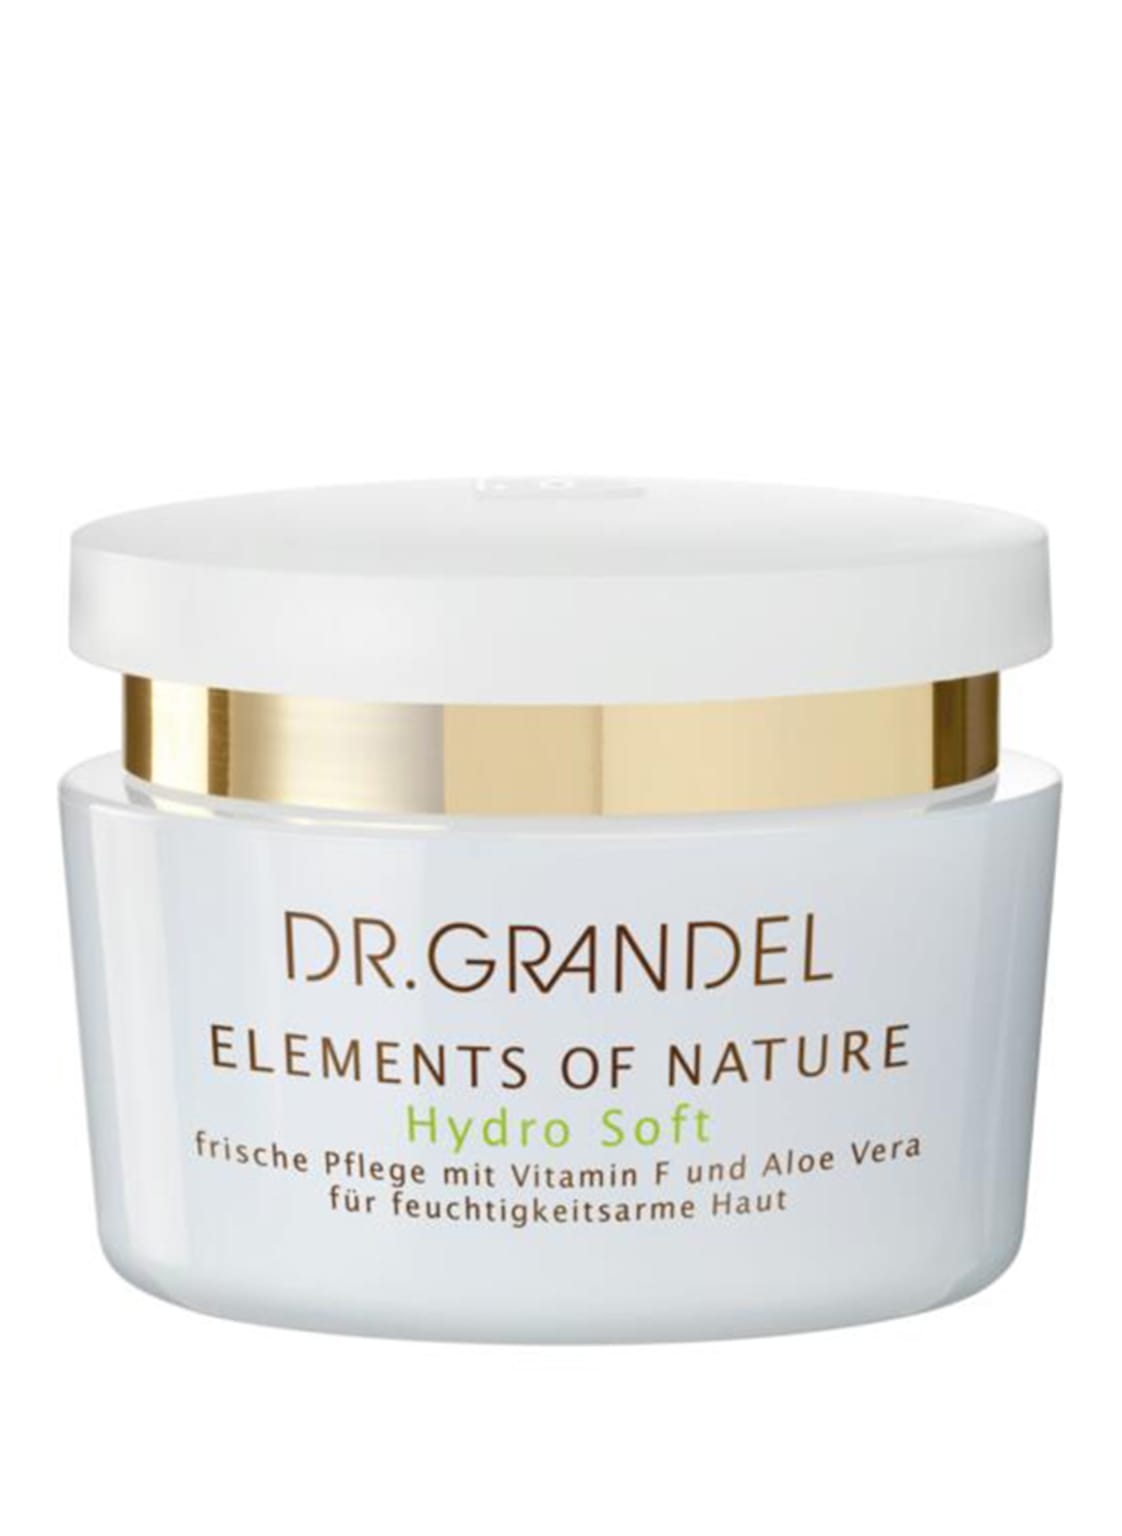 Dr. Grandel Elements Of Nature - Hydro Soft Frische 24 h Feuchtigkeitspflege 50 ml von DR. GRANDEL